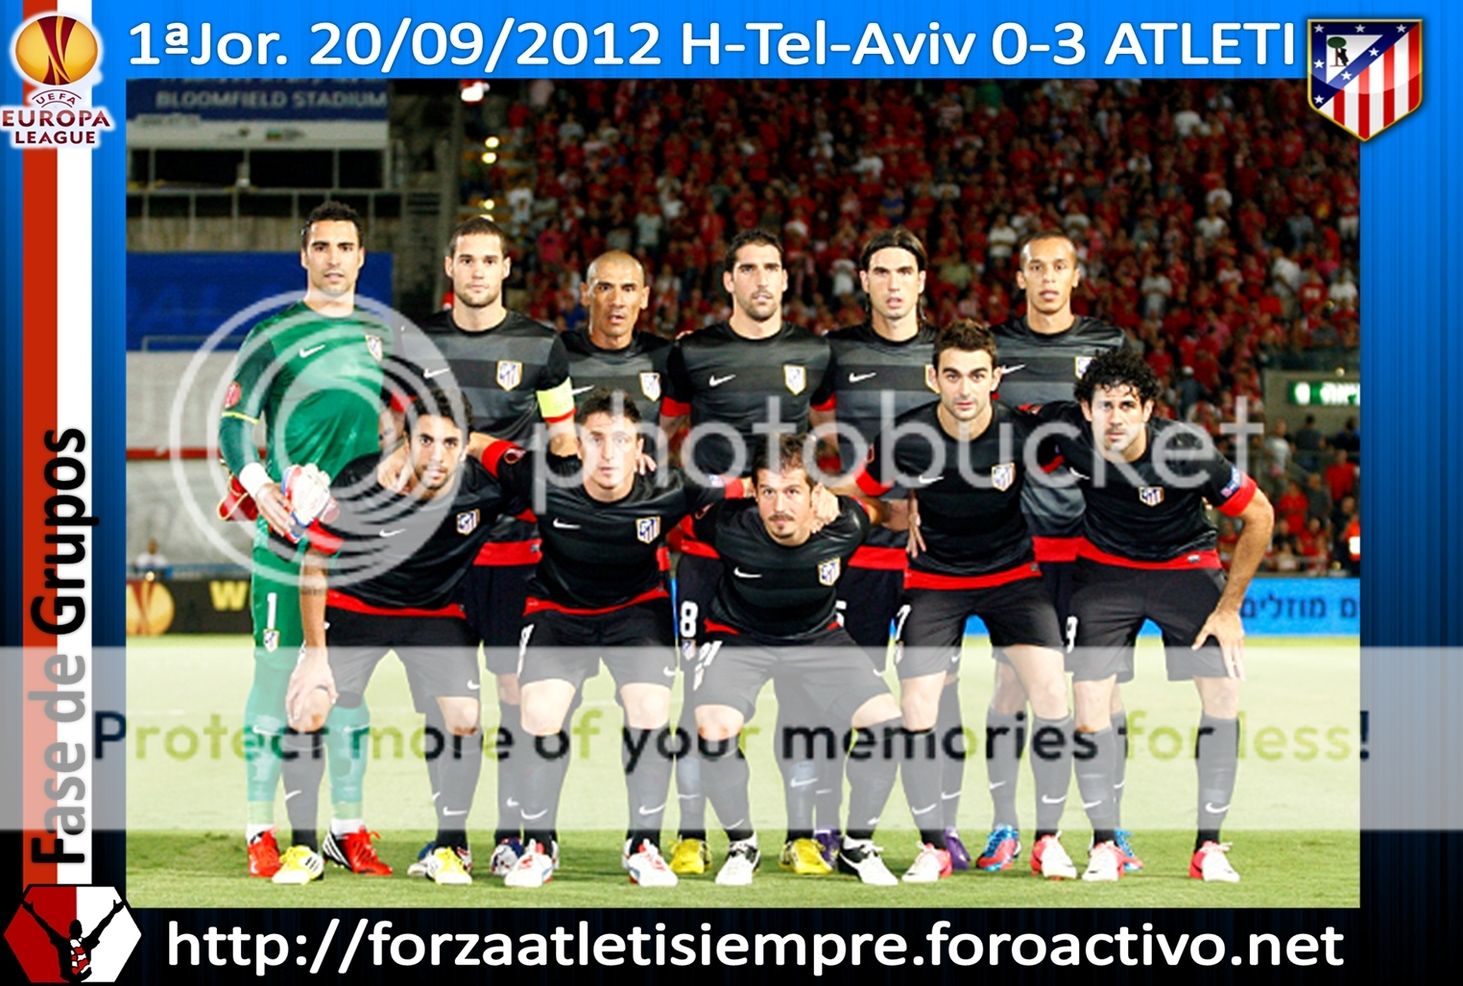 1ª Jor. UEFA Euro. L. 2012/13 - H. Tel Aviv 0-3 ATLETI - La cara B del ... 002aaCopiar_zps4a547455